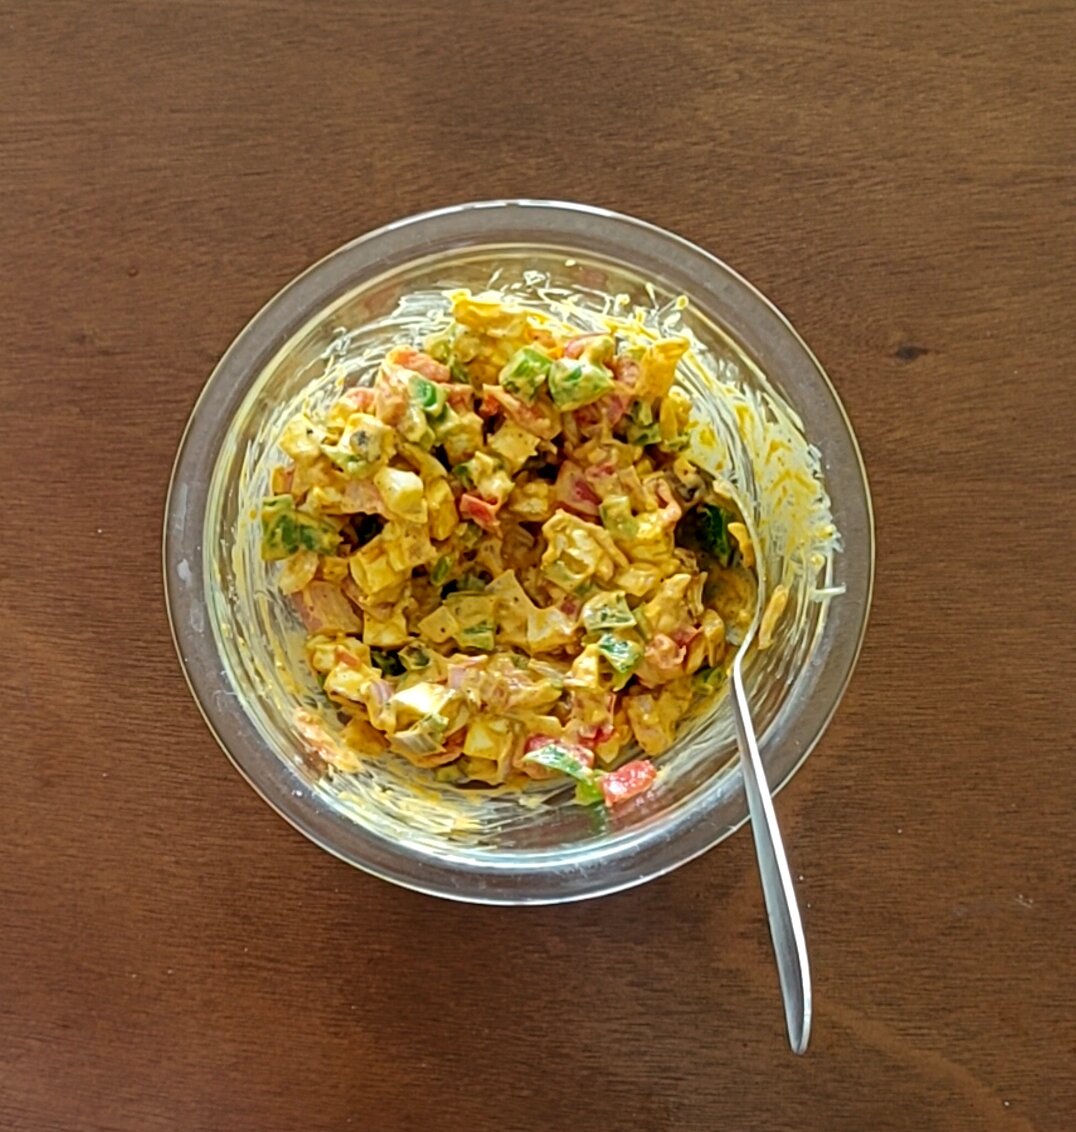 Mixing tandoori mayonnaise with vegetables and paneer.